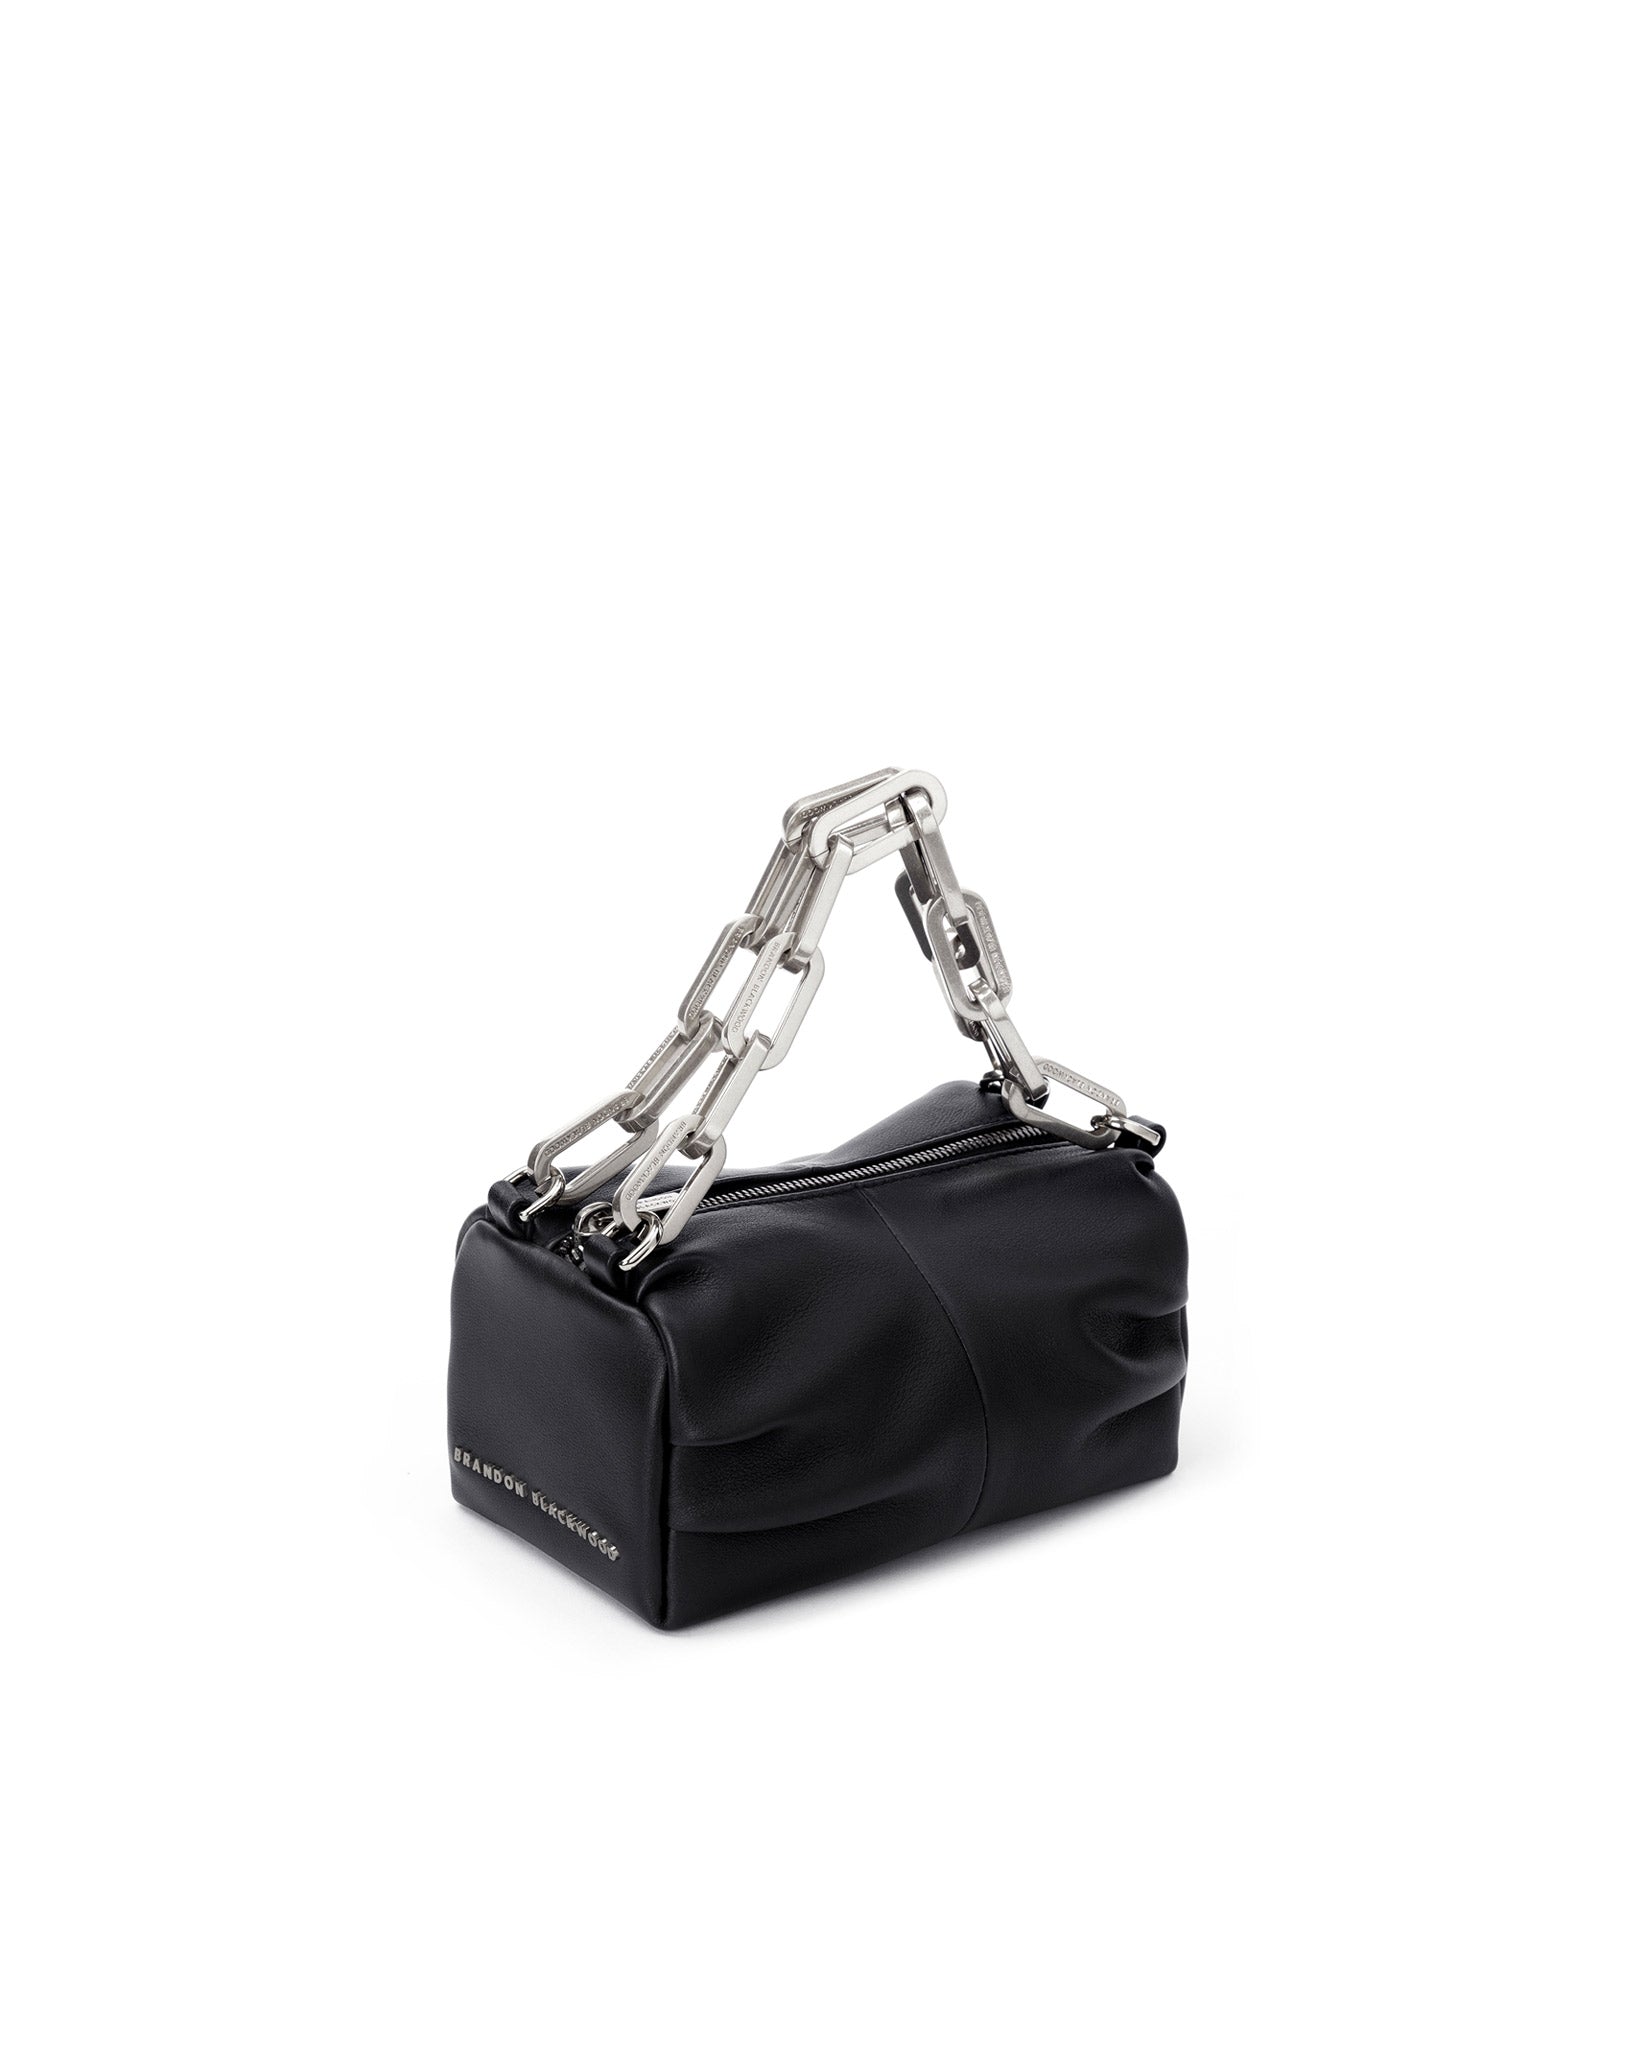 Black Leather Large Sling Bag (Silver Hardware) – Florrie & Bird